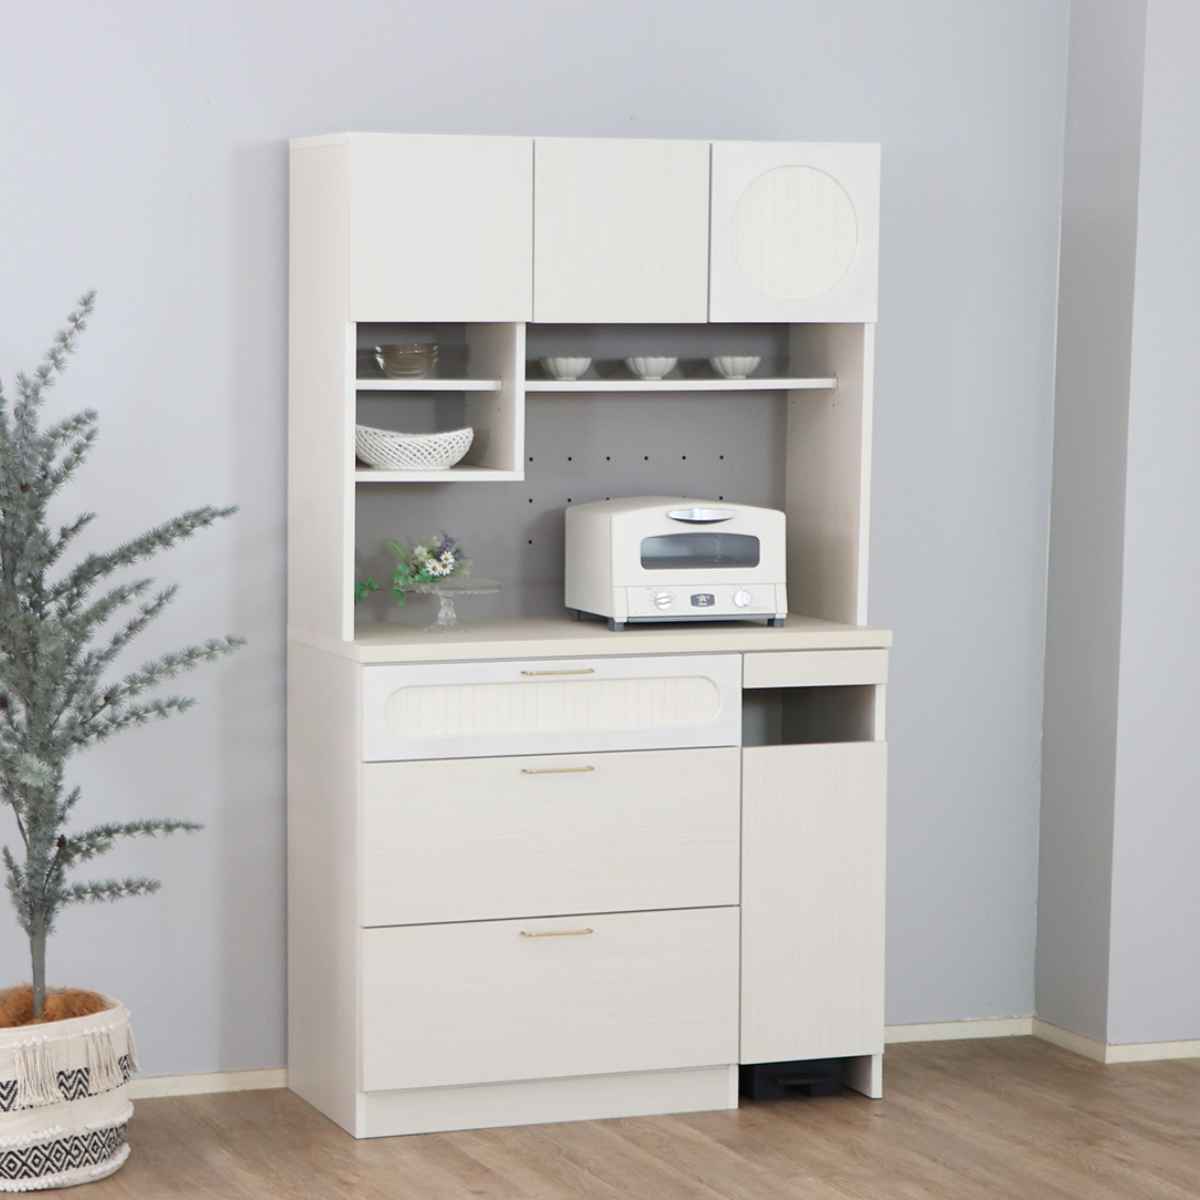 食器棚 共和産業 キッチンボード ホワイト - 収納家具